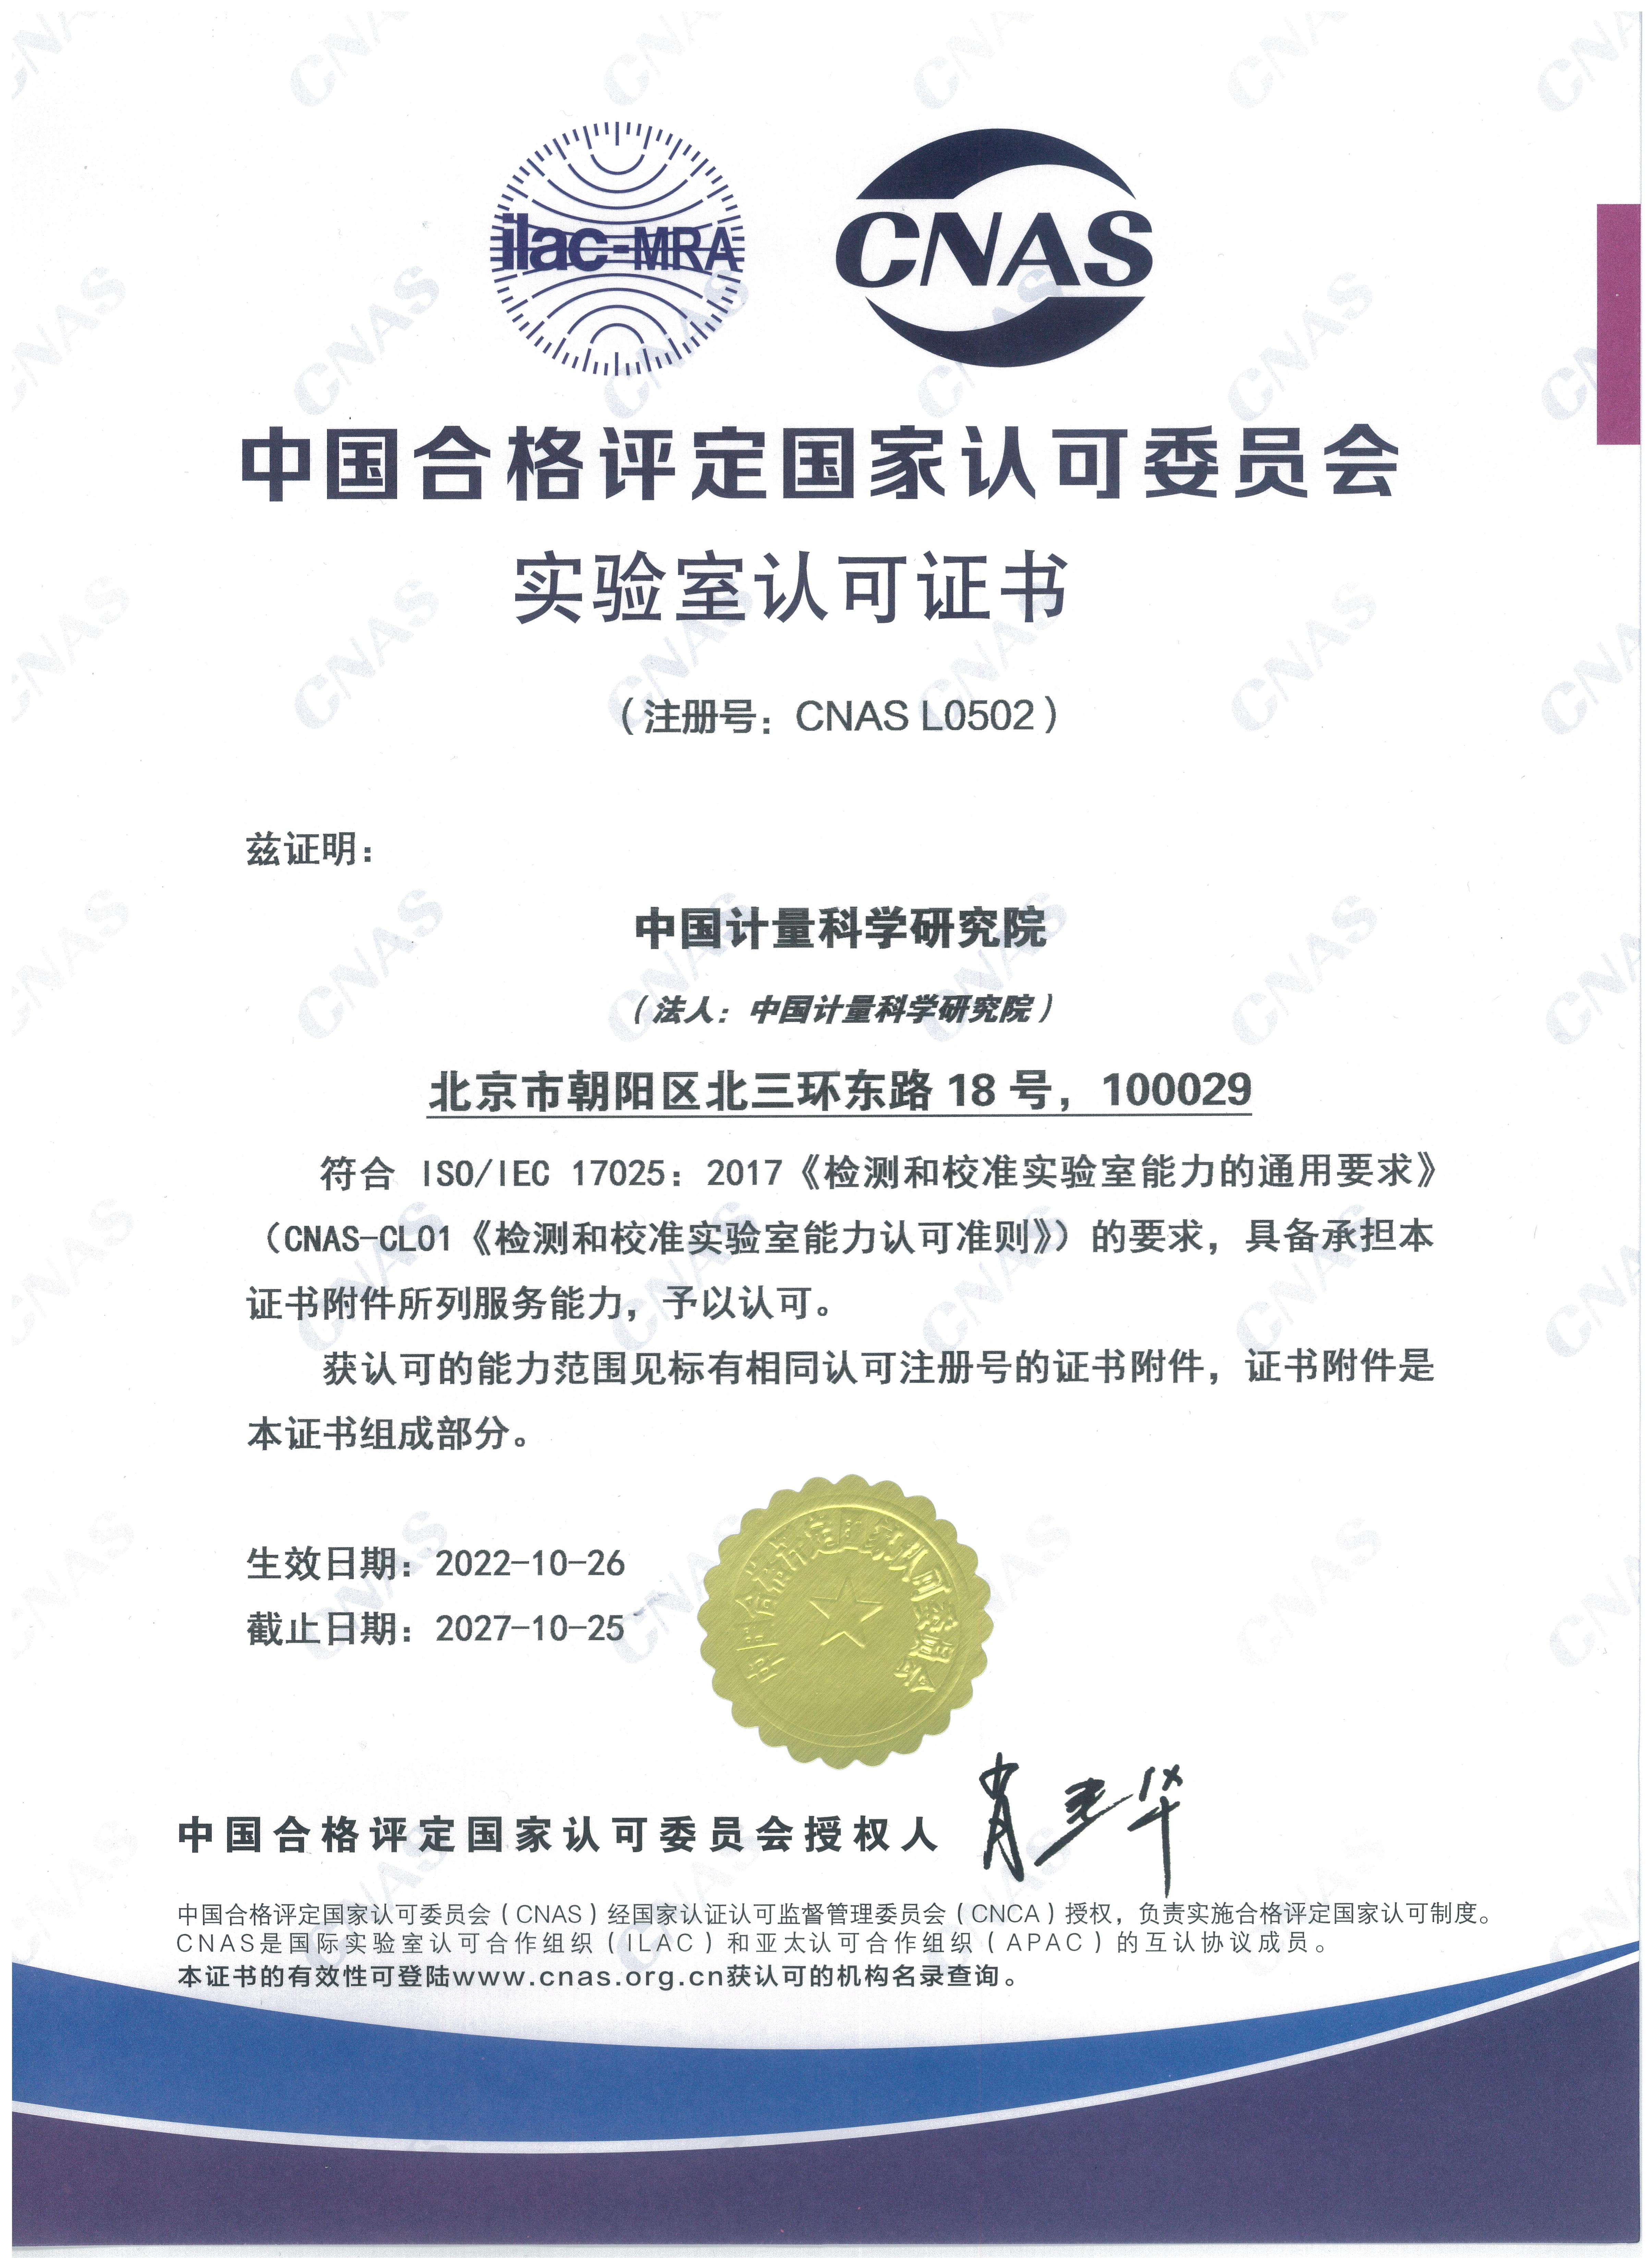 中国合格评定国家认可委员会实验室认可证书（中文）.jpg 